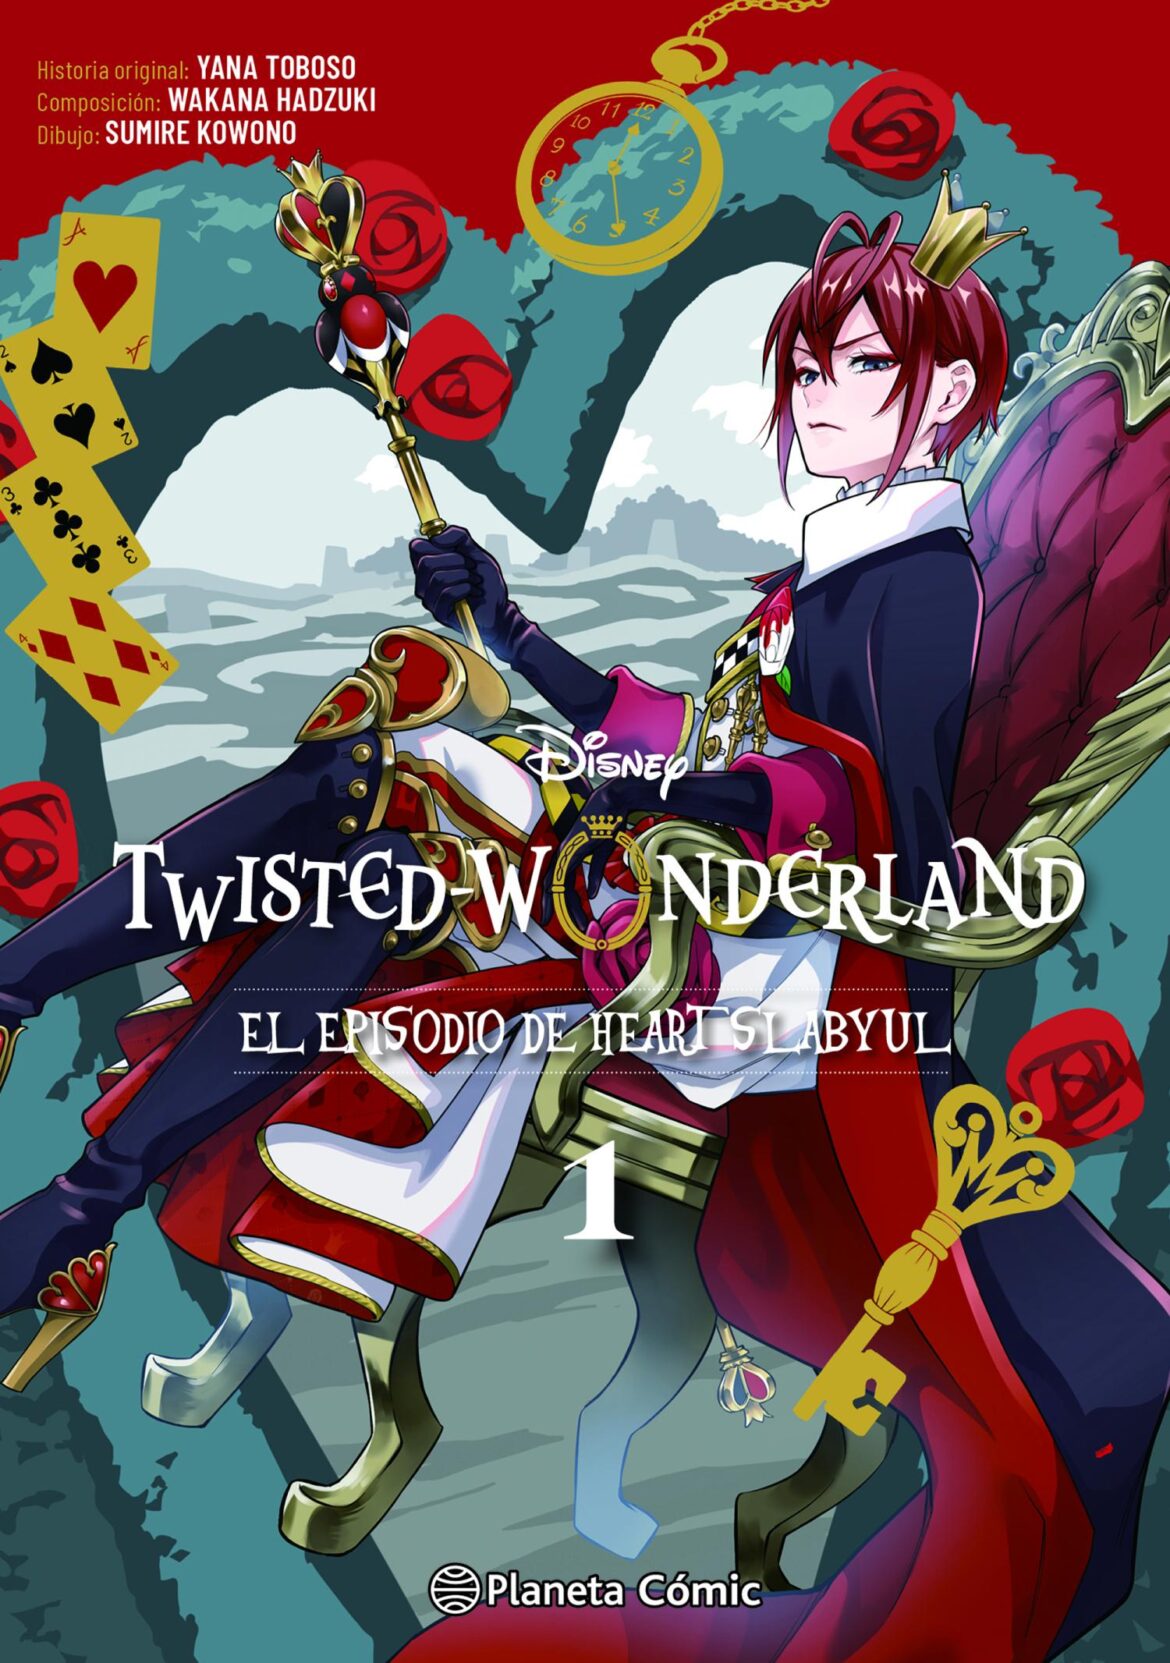 Twisted Wonderland – El episodio de Heartslabyul